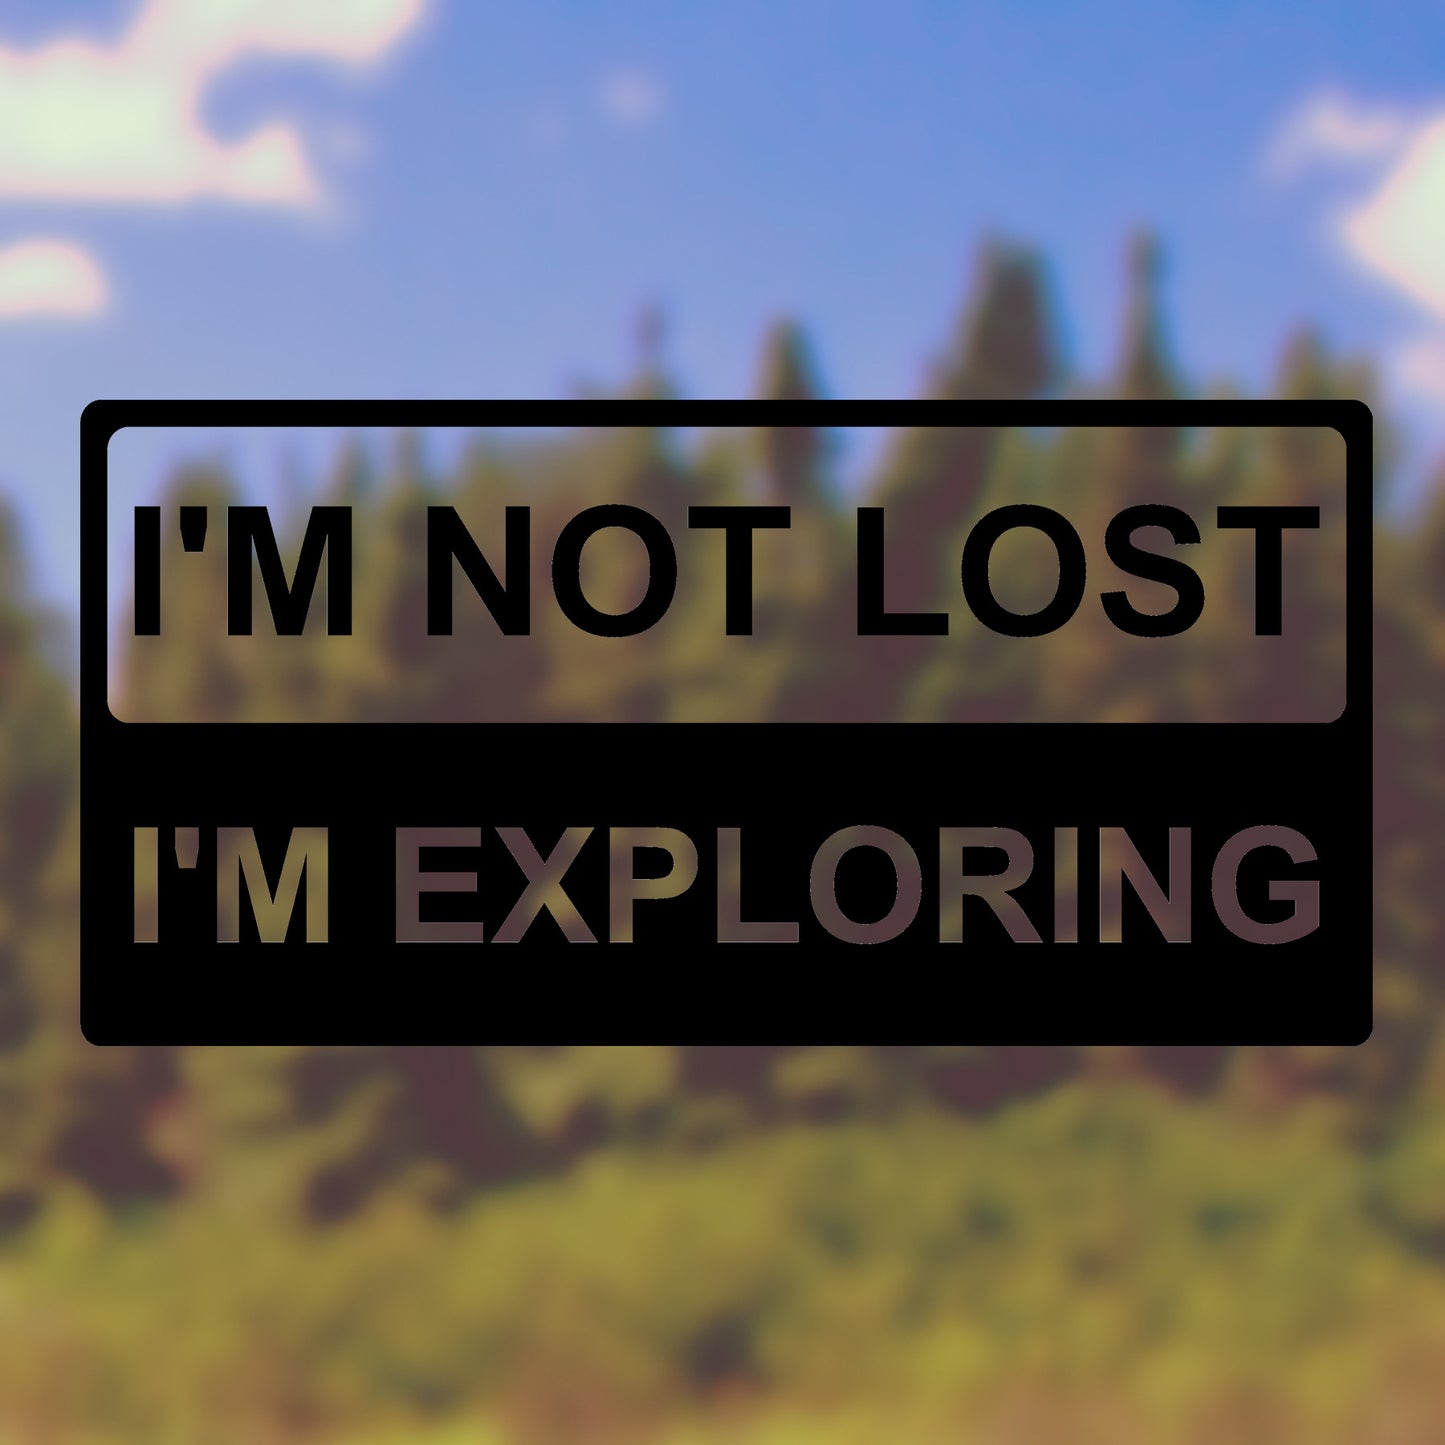 I'm not lost, I'm exploring | Bumper sticker - Adnil Creations